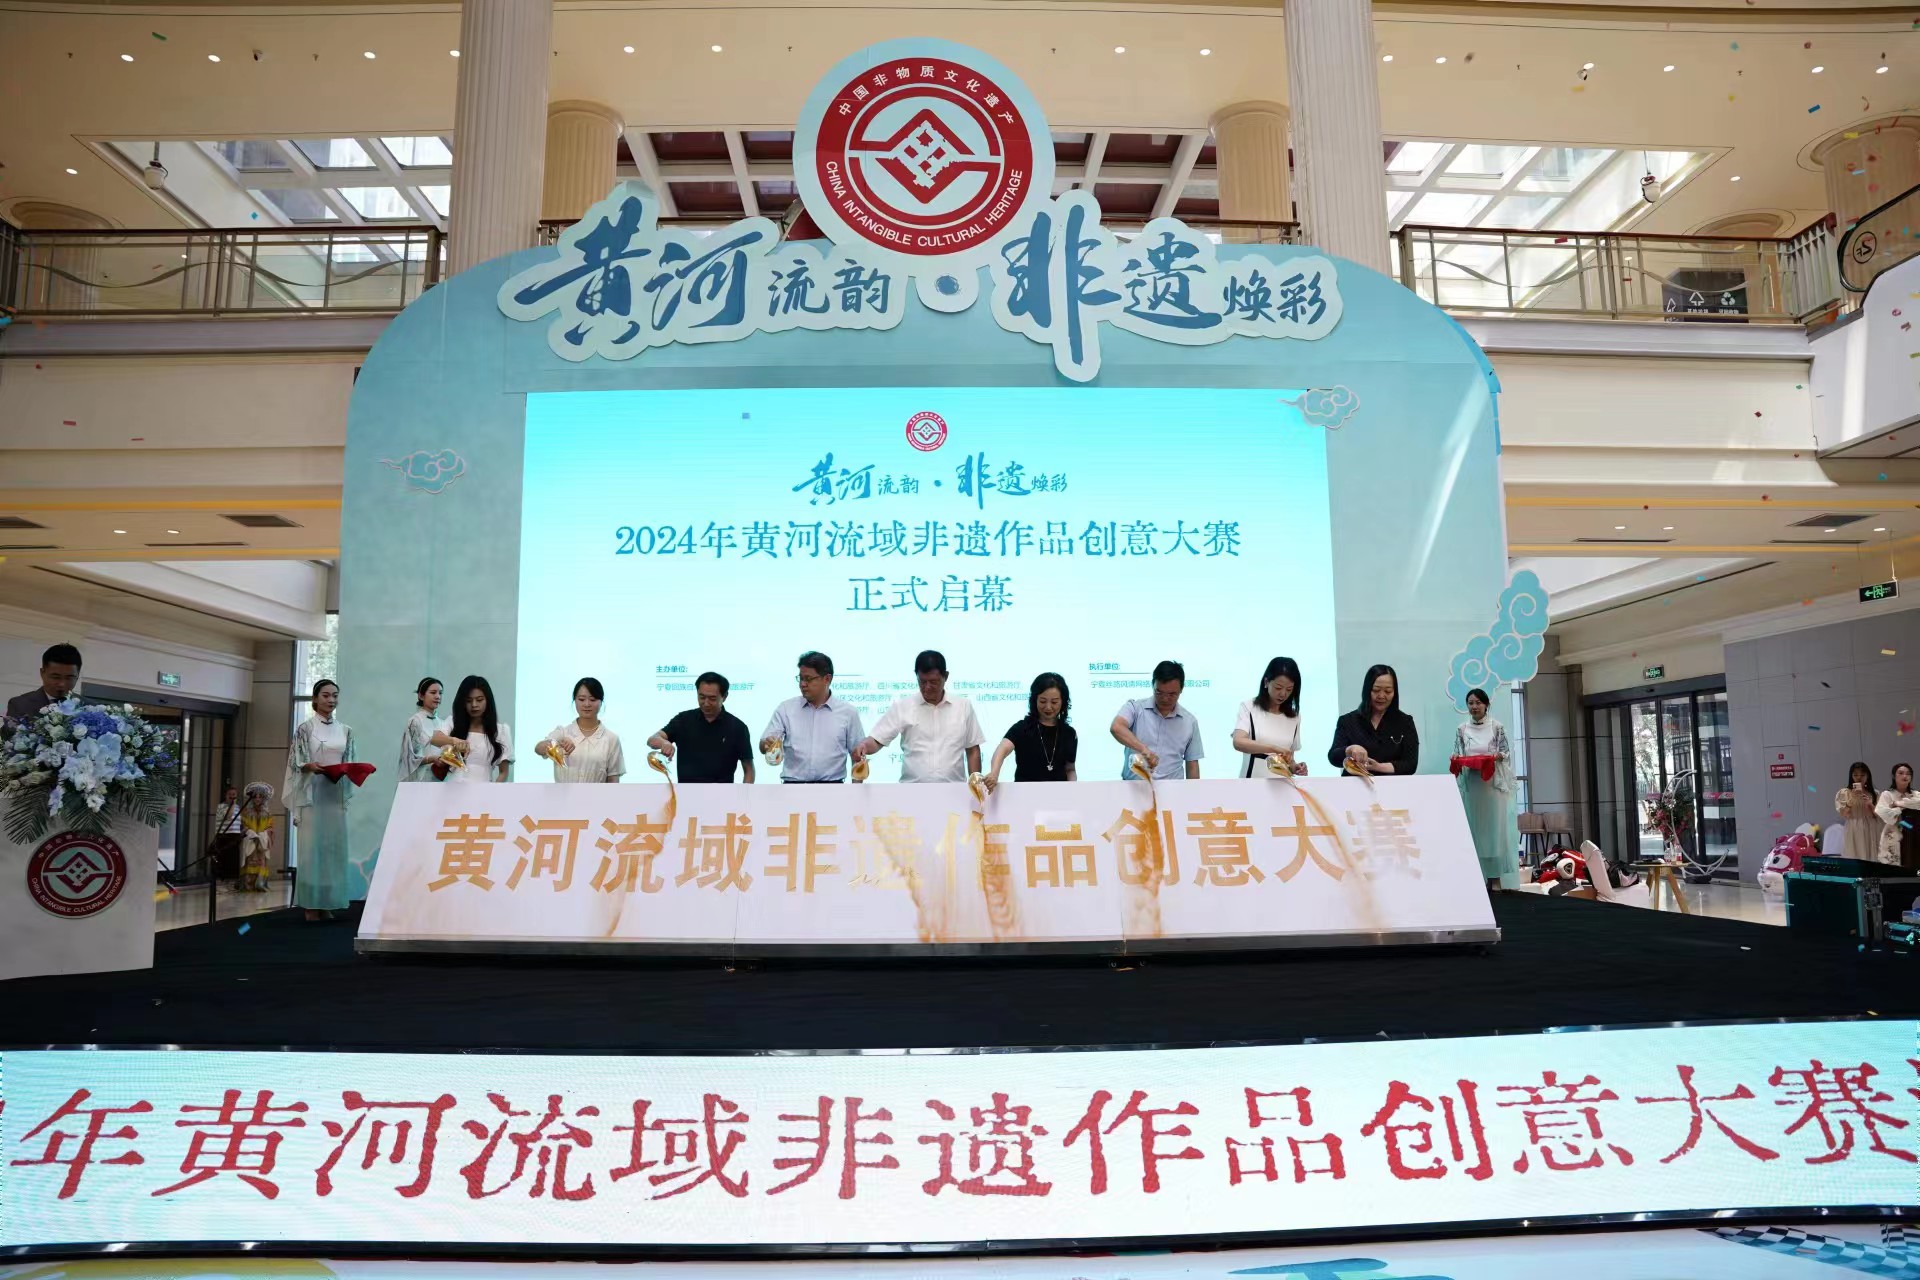 2024年黄河流域非遗作品创意大赛活动在宁夏举办